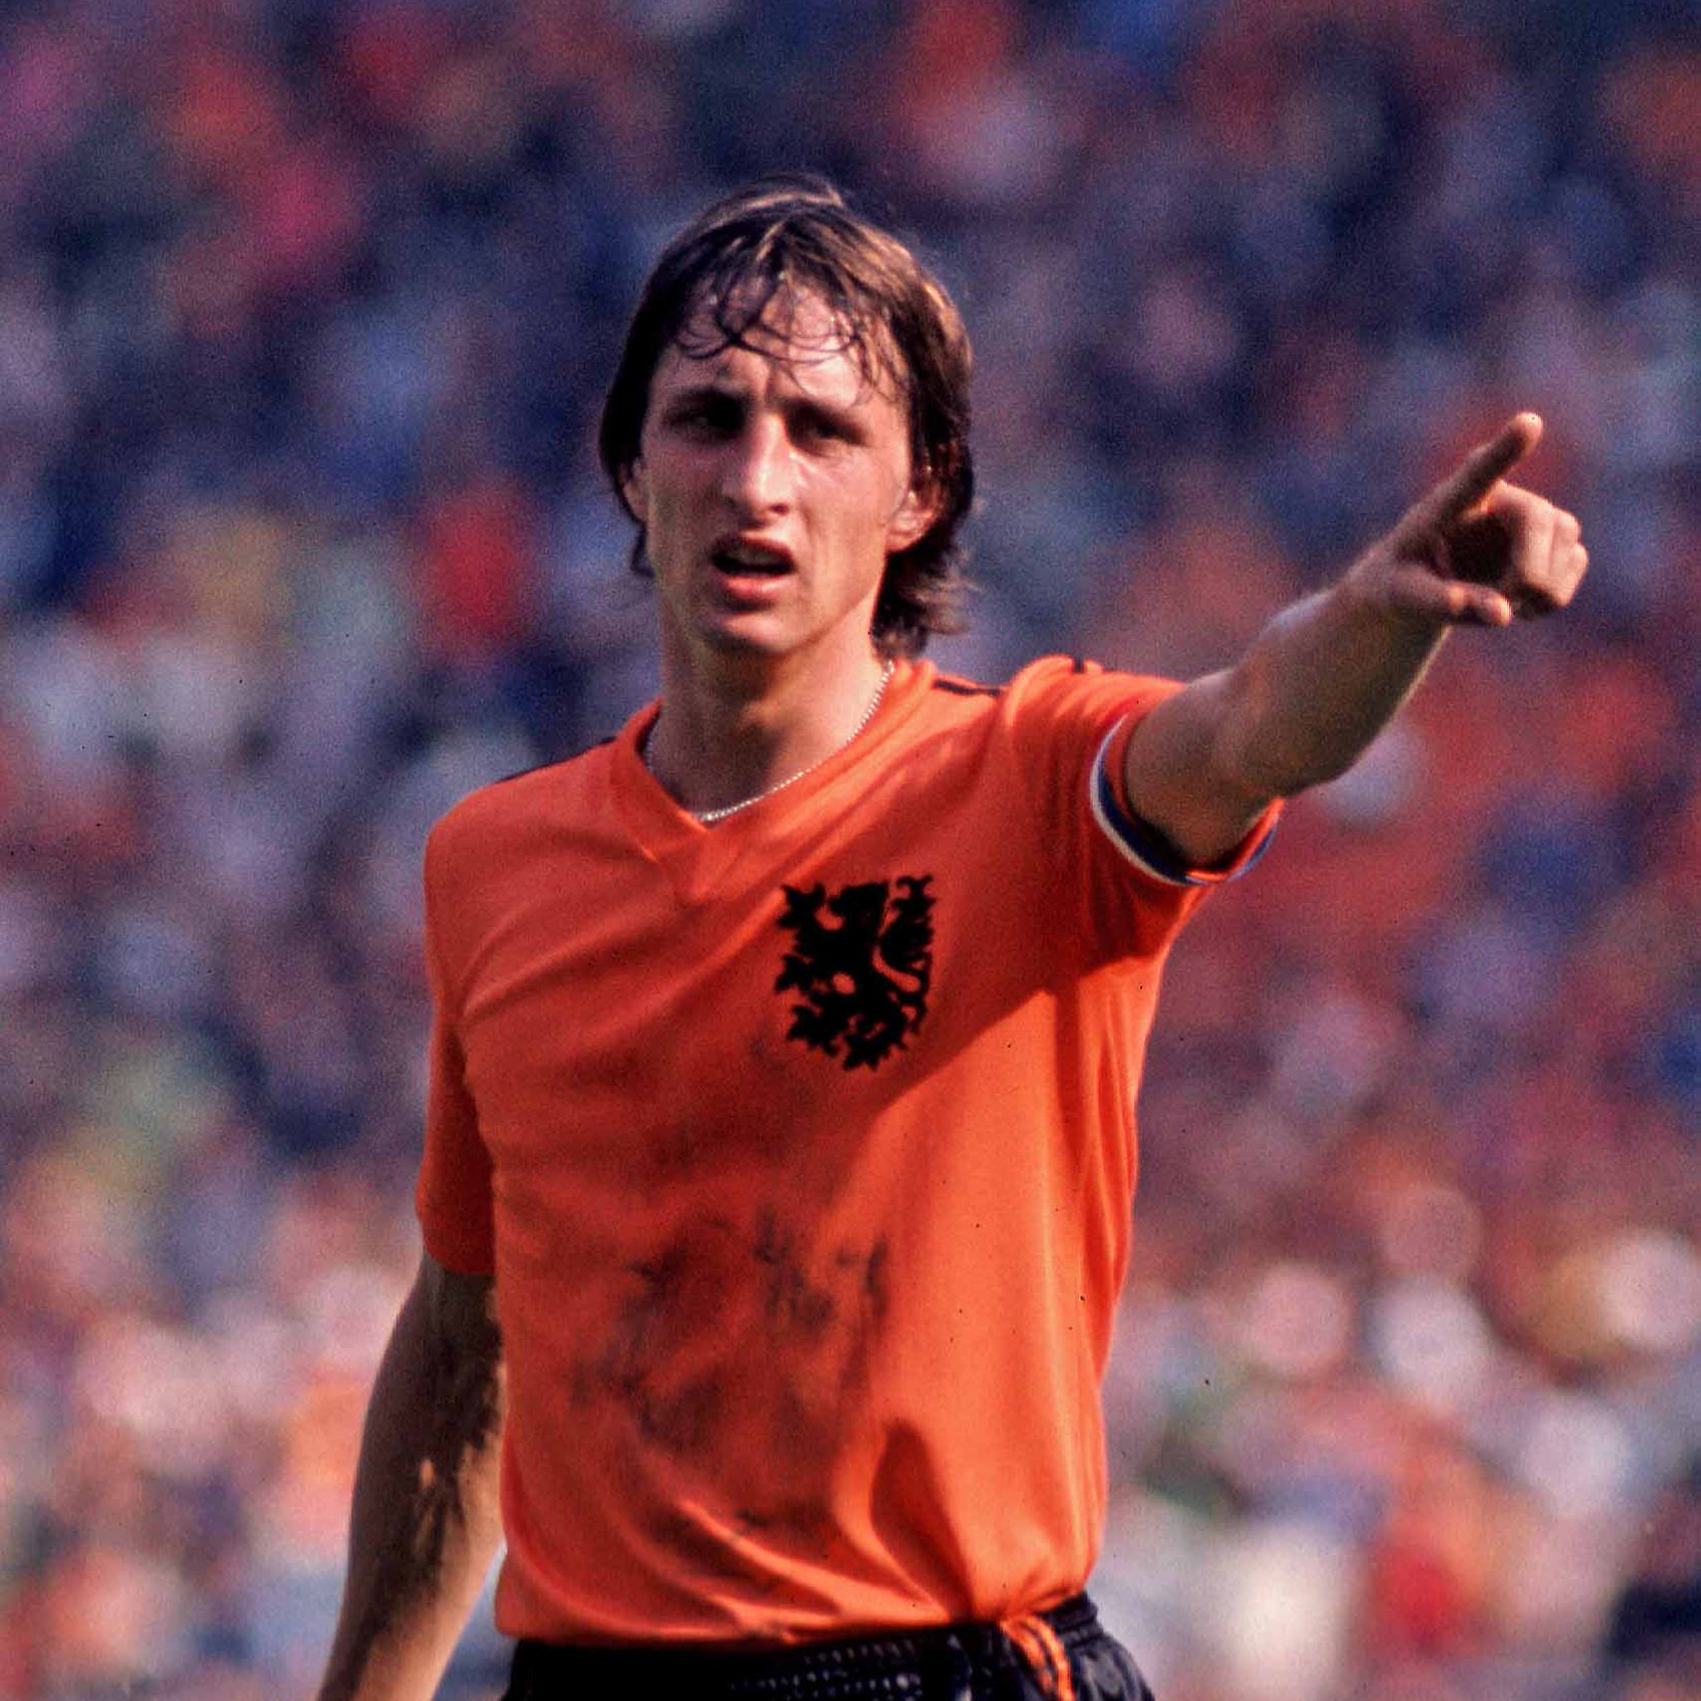 Ngũ đại tông sư thế giới bóng đá: Chỉ mình Cruyff là thánh - Ảnh 1.